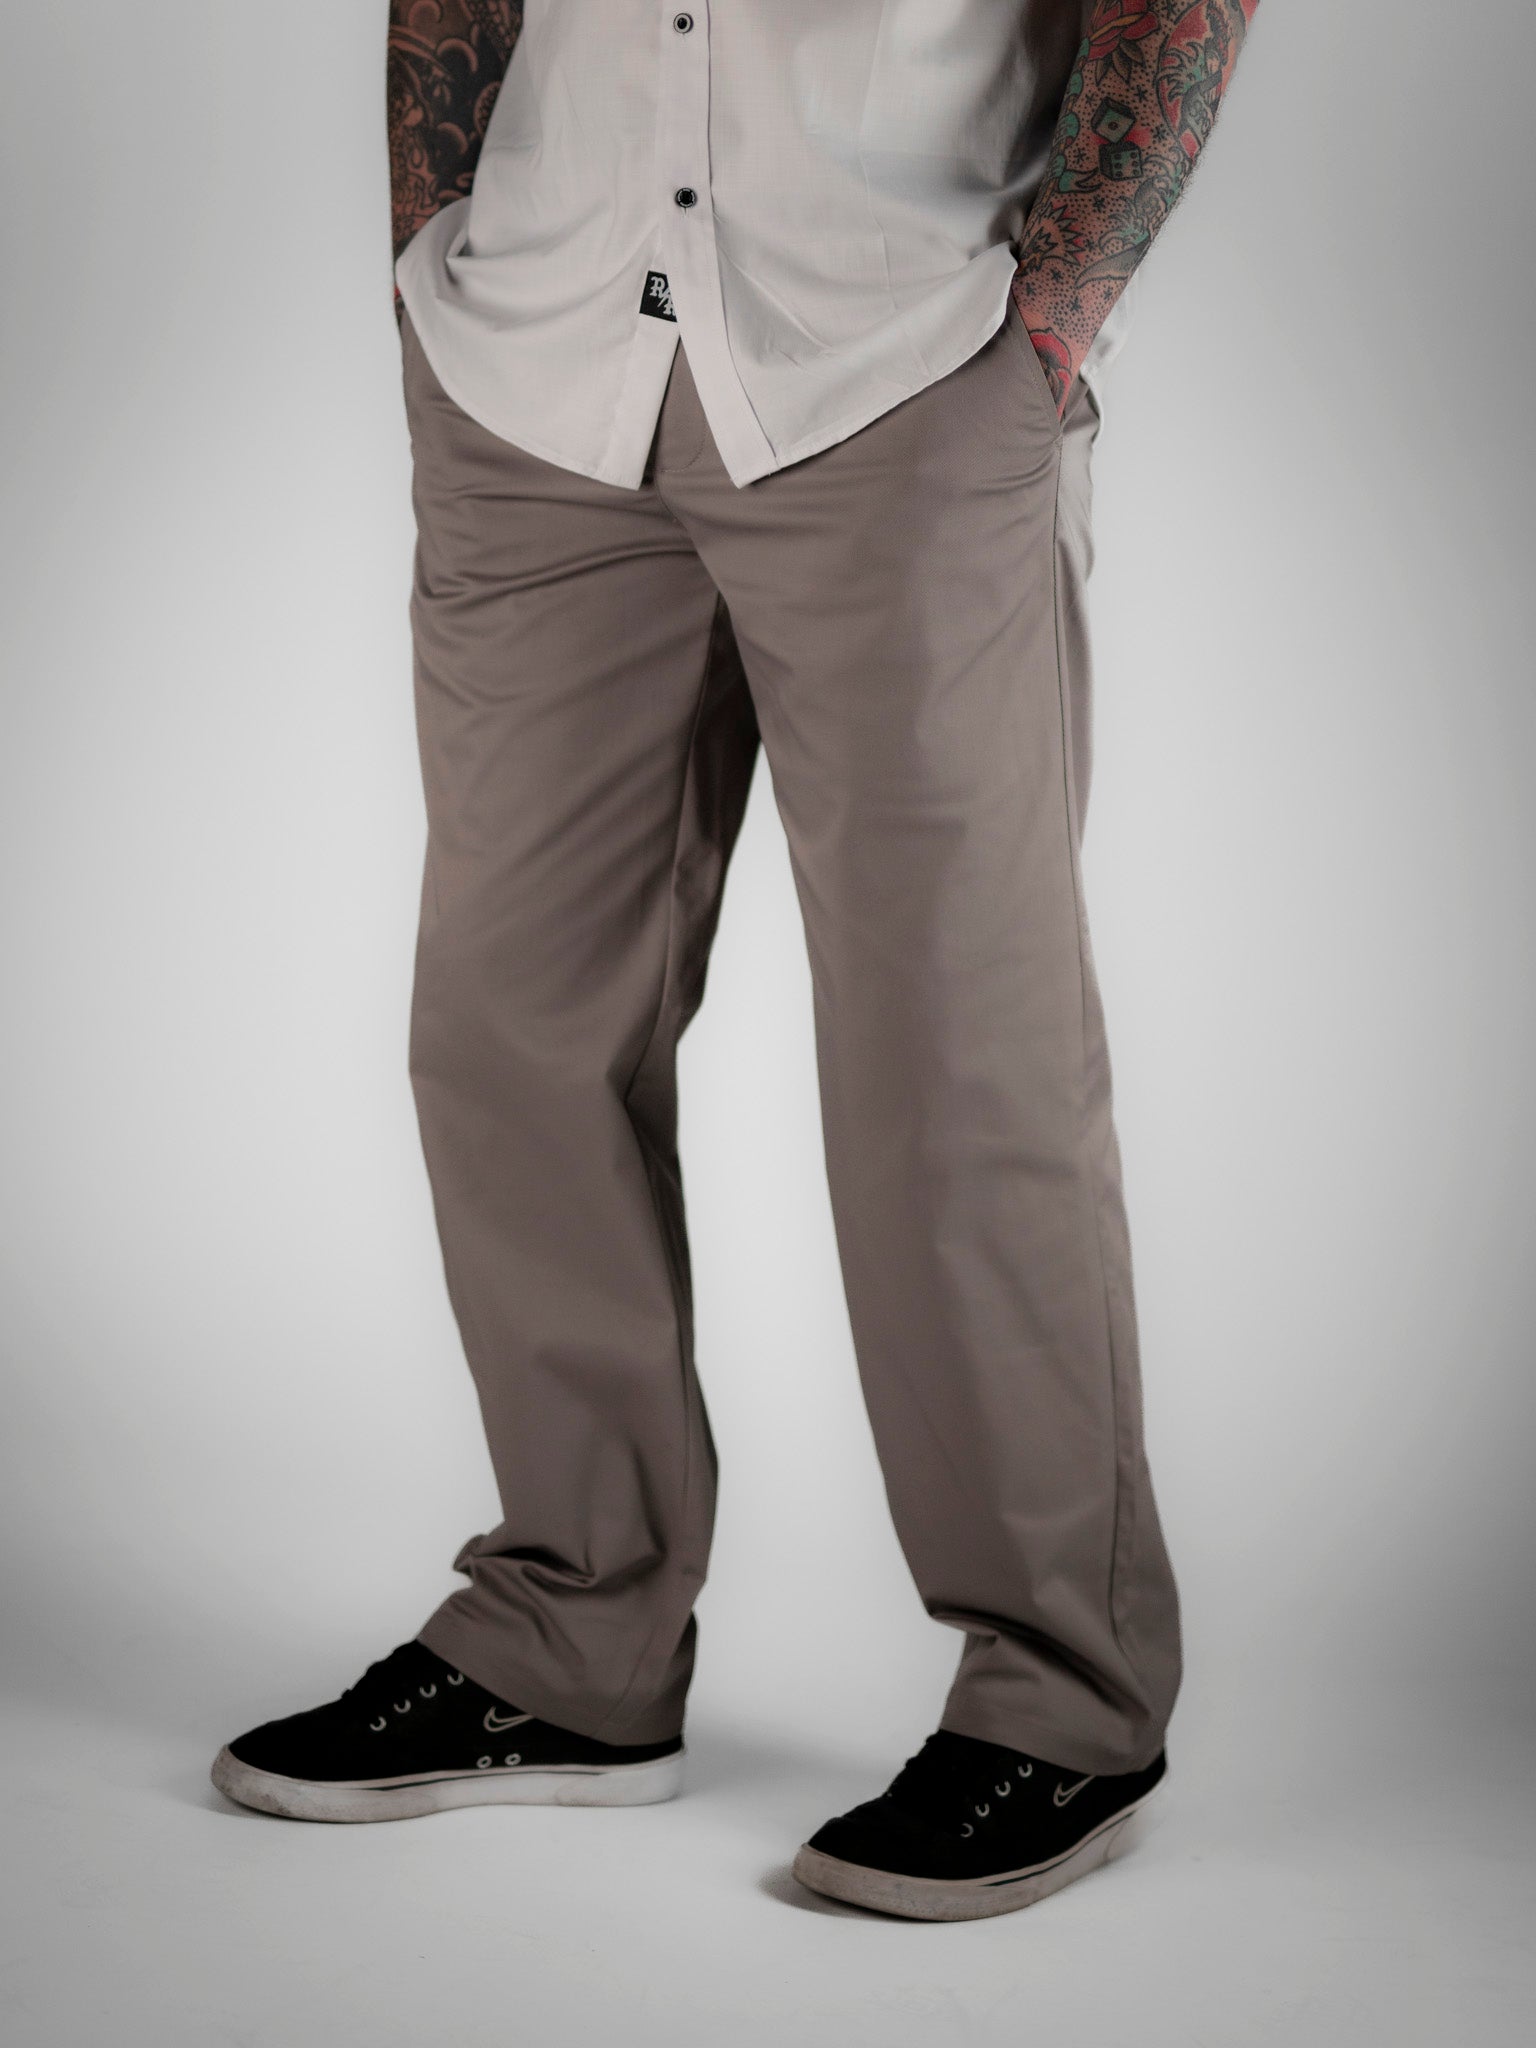 Chino Pants Grey - Rebel Reaper Clothing Company